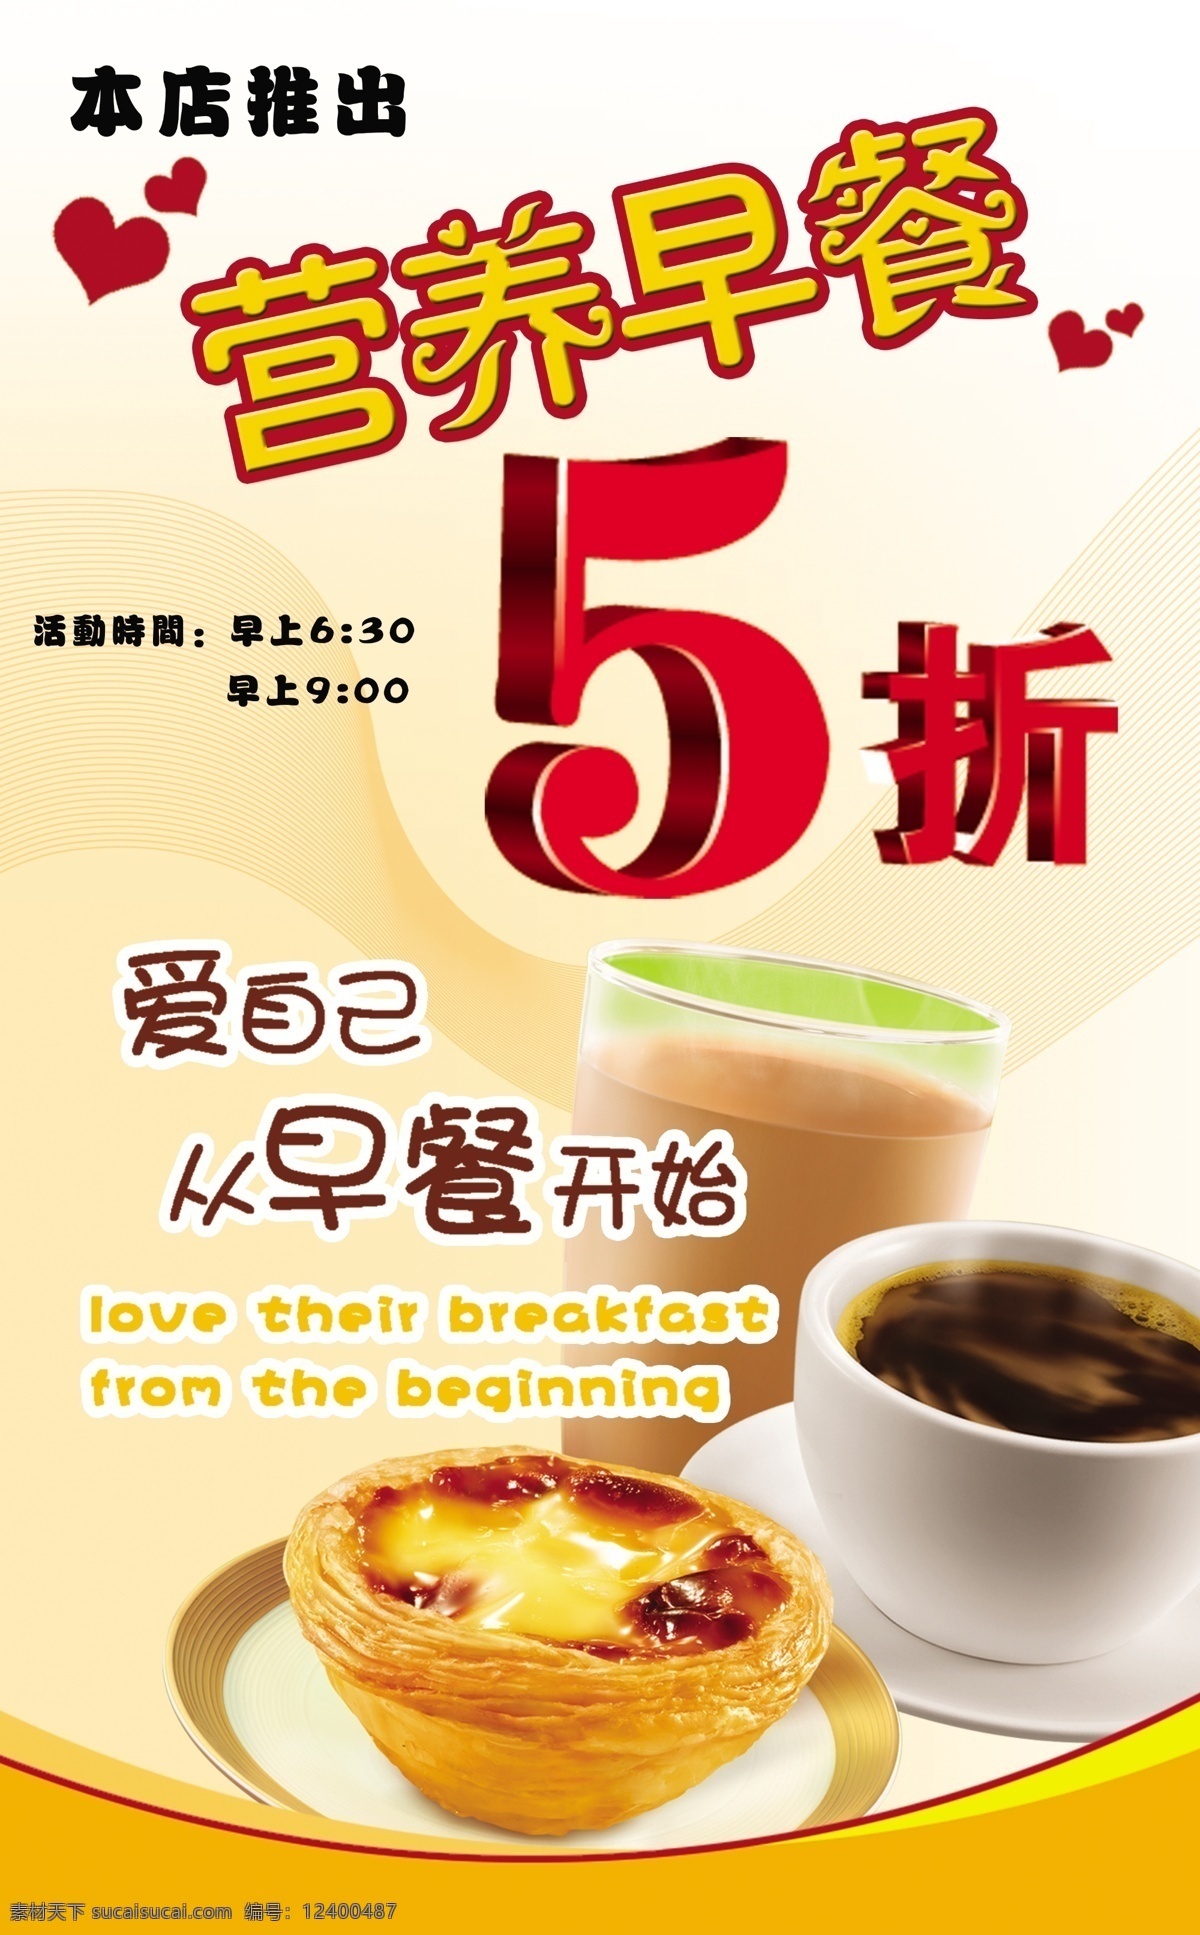 爱心 蛋挞 广告设计模板 咖啡 奶茶 源文件 营养 早餐 打折 海报 模板下载 矢量图 日常生活